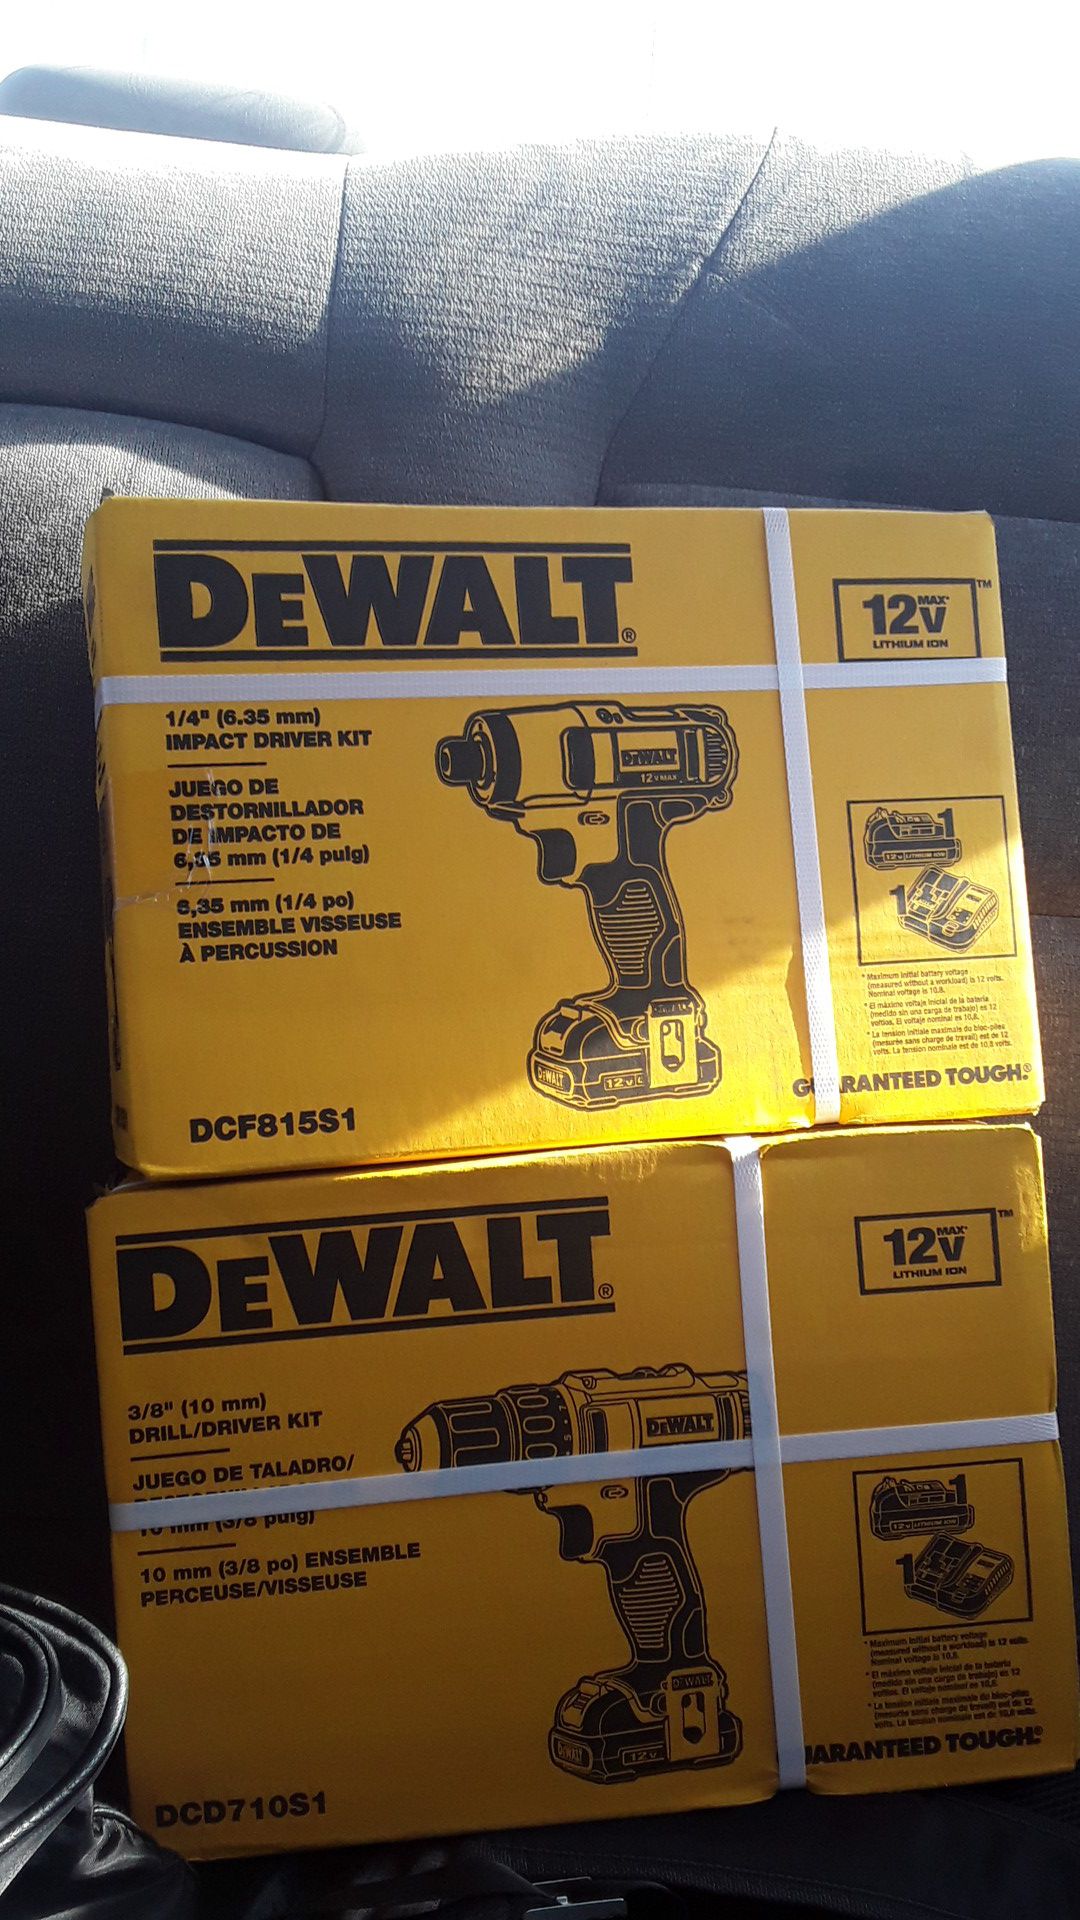 Dewalt impact drill/driver kit both brand new